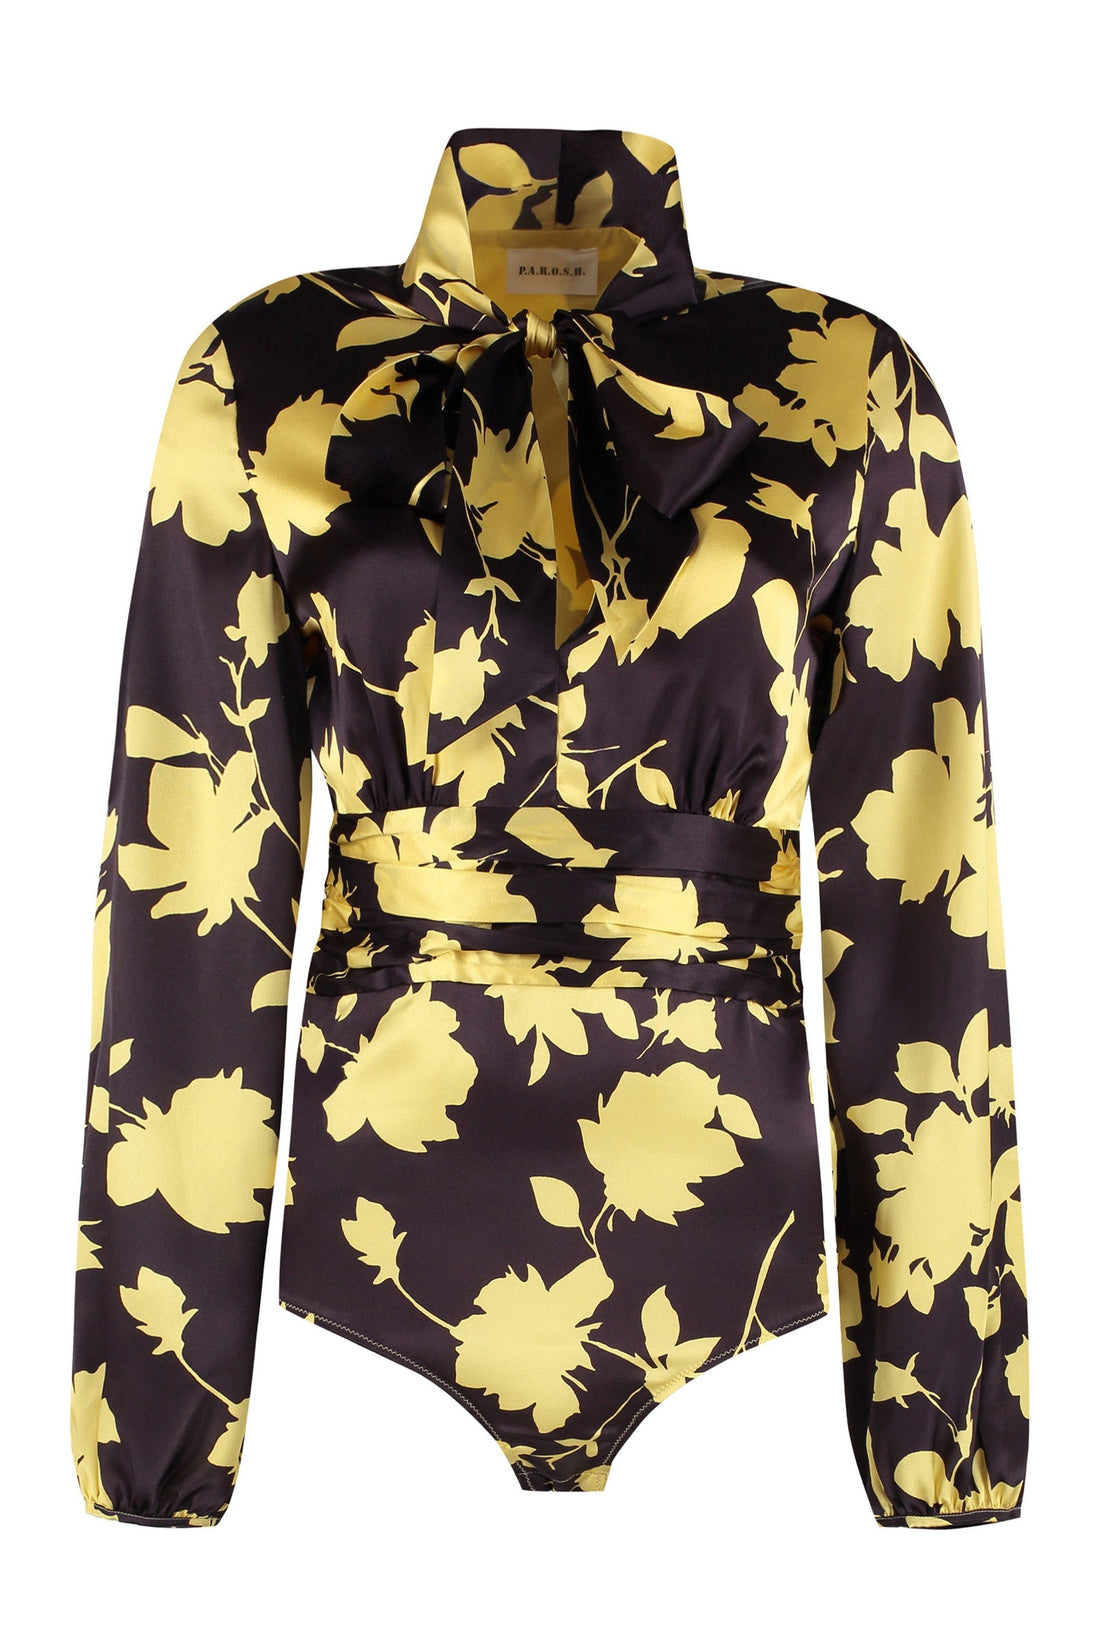 Parosh-OUTLET-SALE-Sera floral print bodysuit-blouse-ARCHIVIST